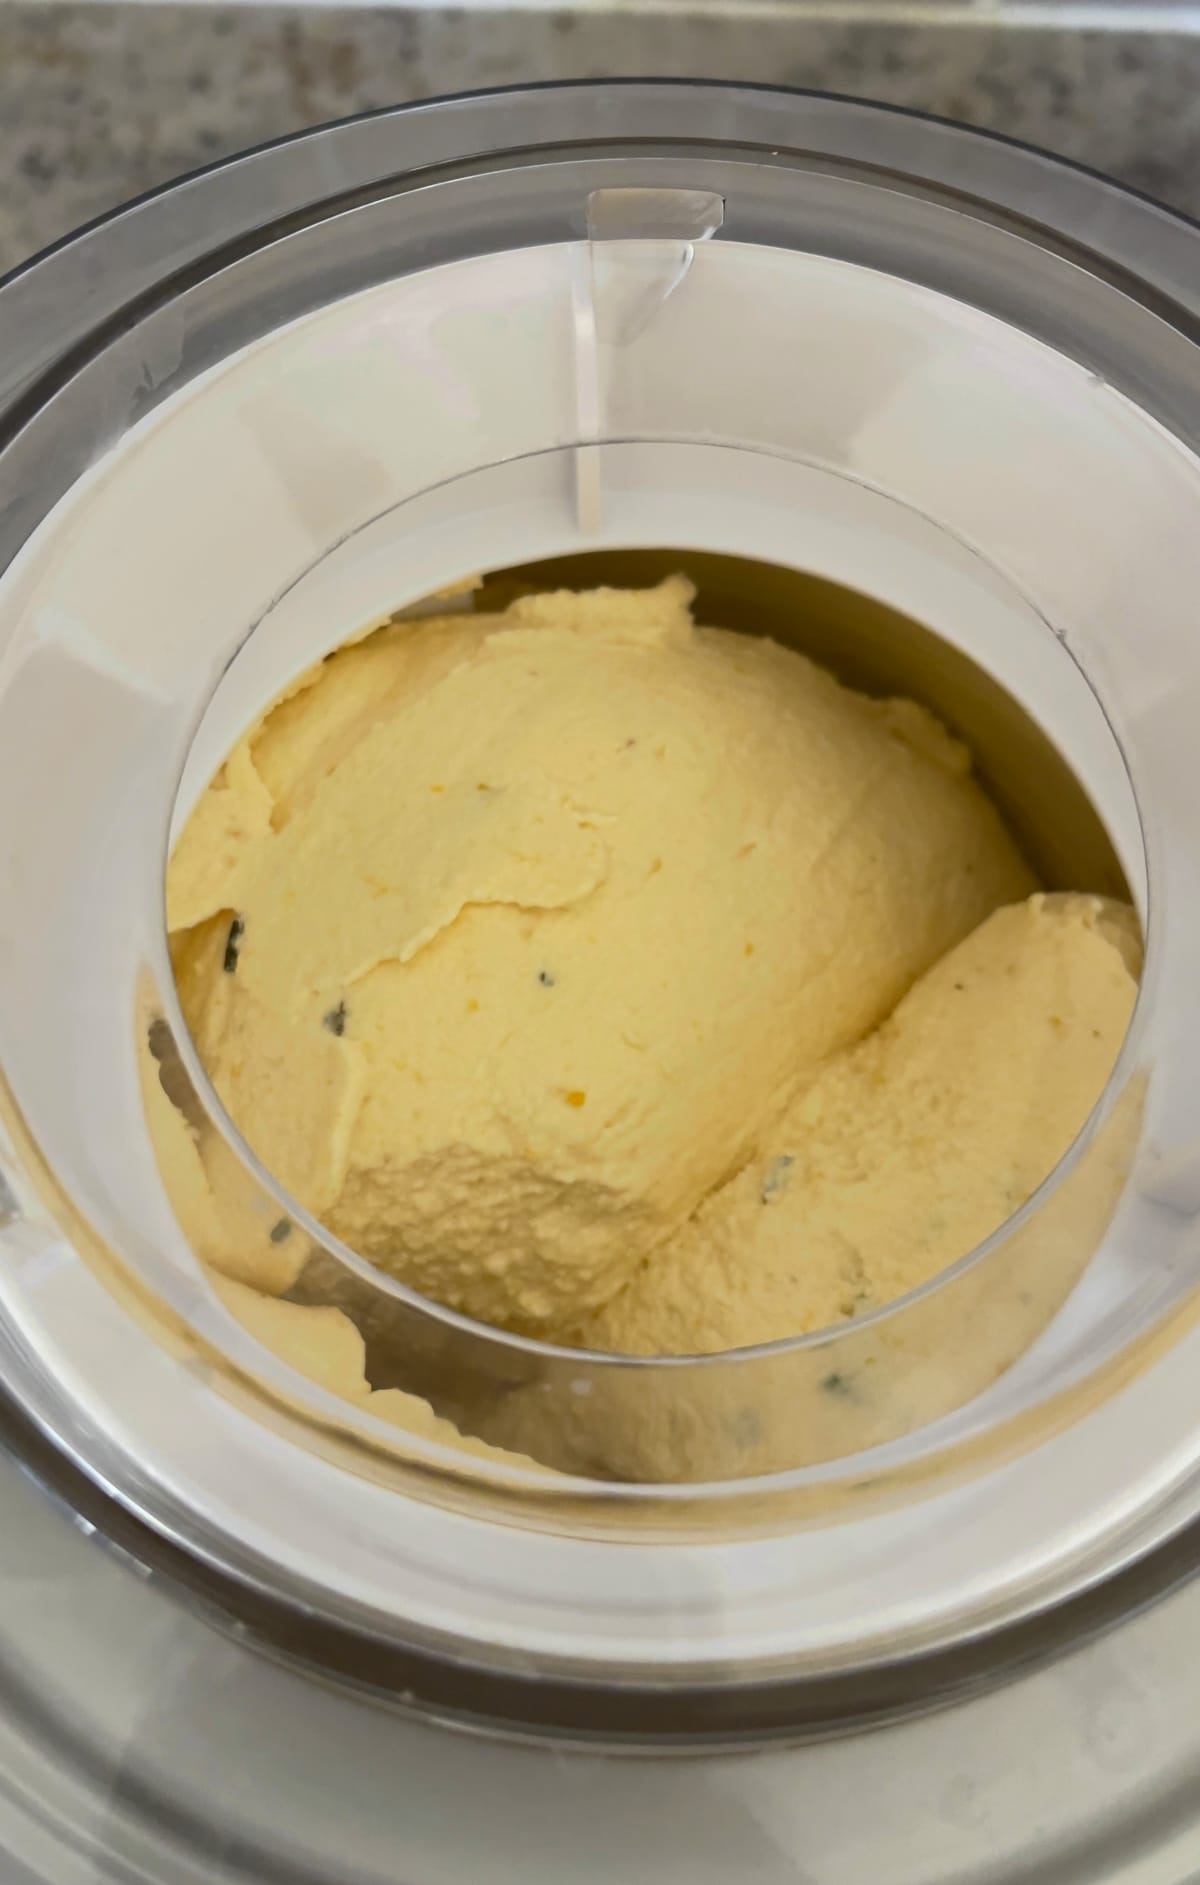 churning ice cream in the machine